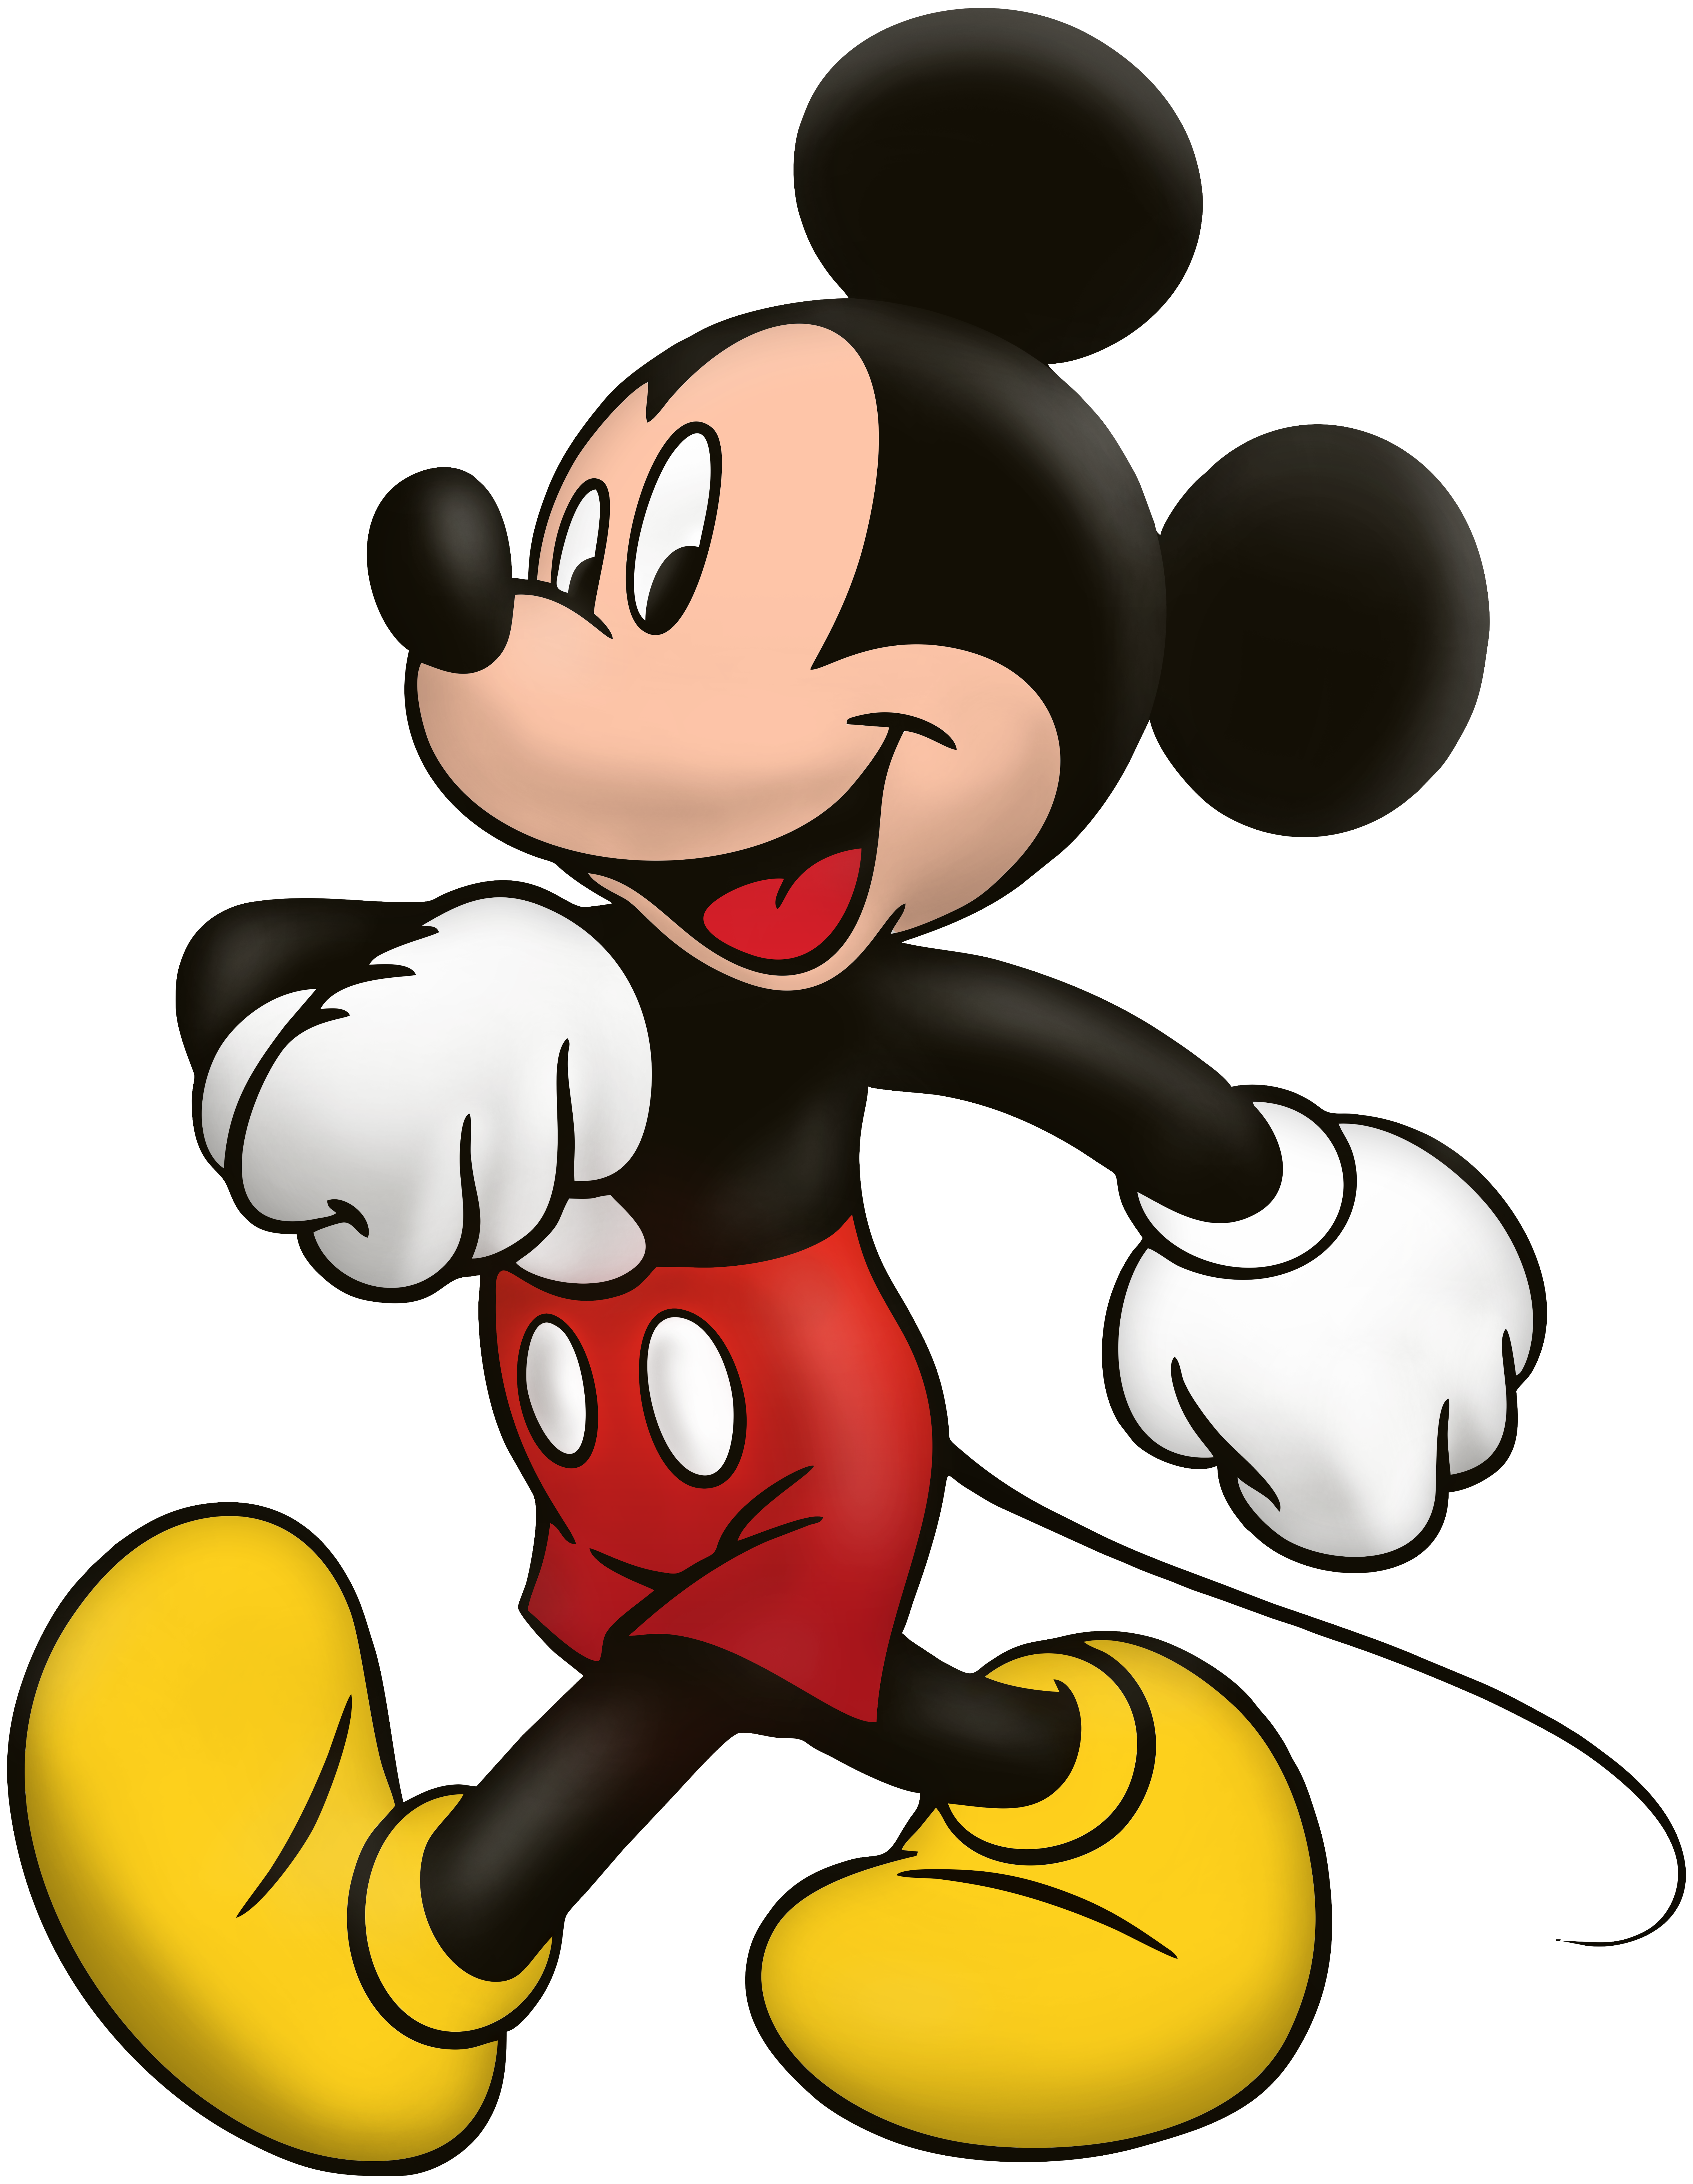 mickey mouse cartoon